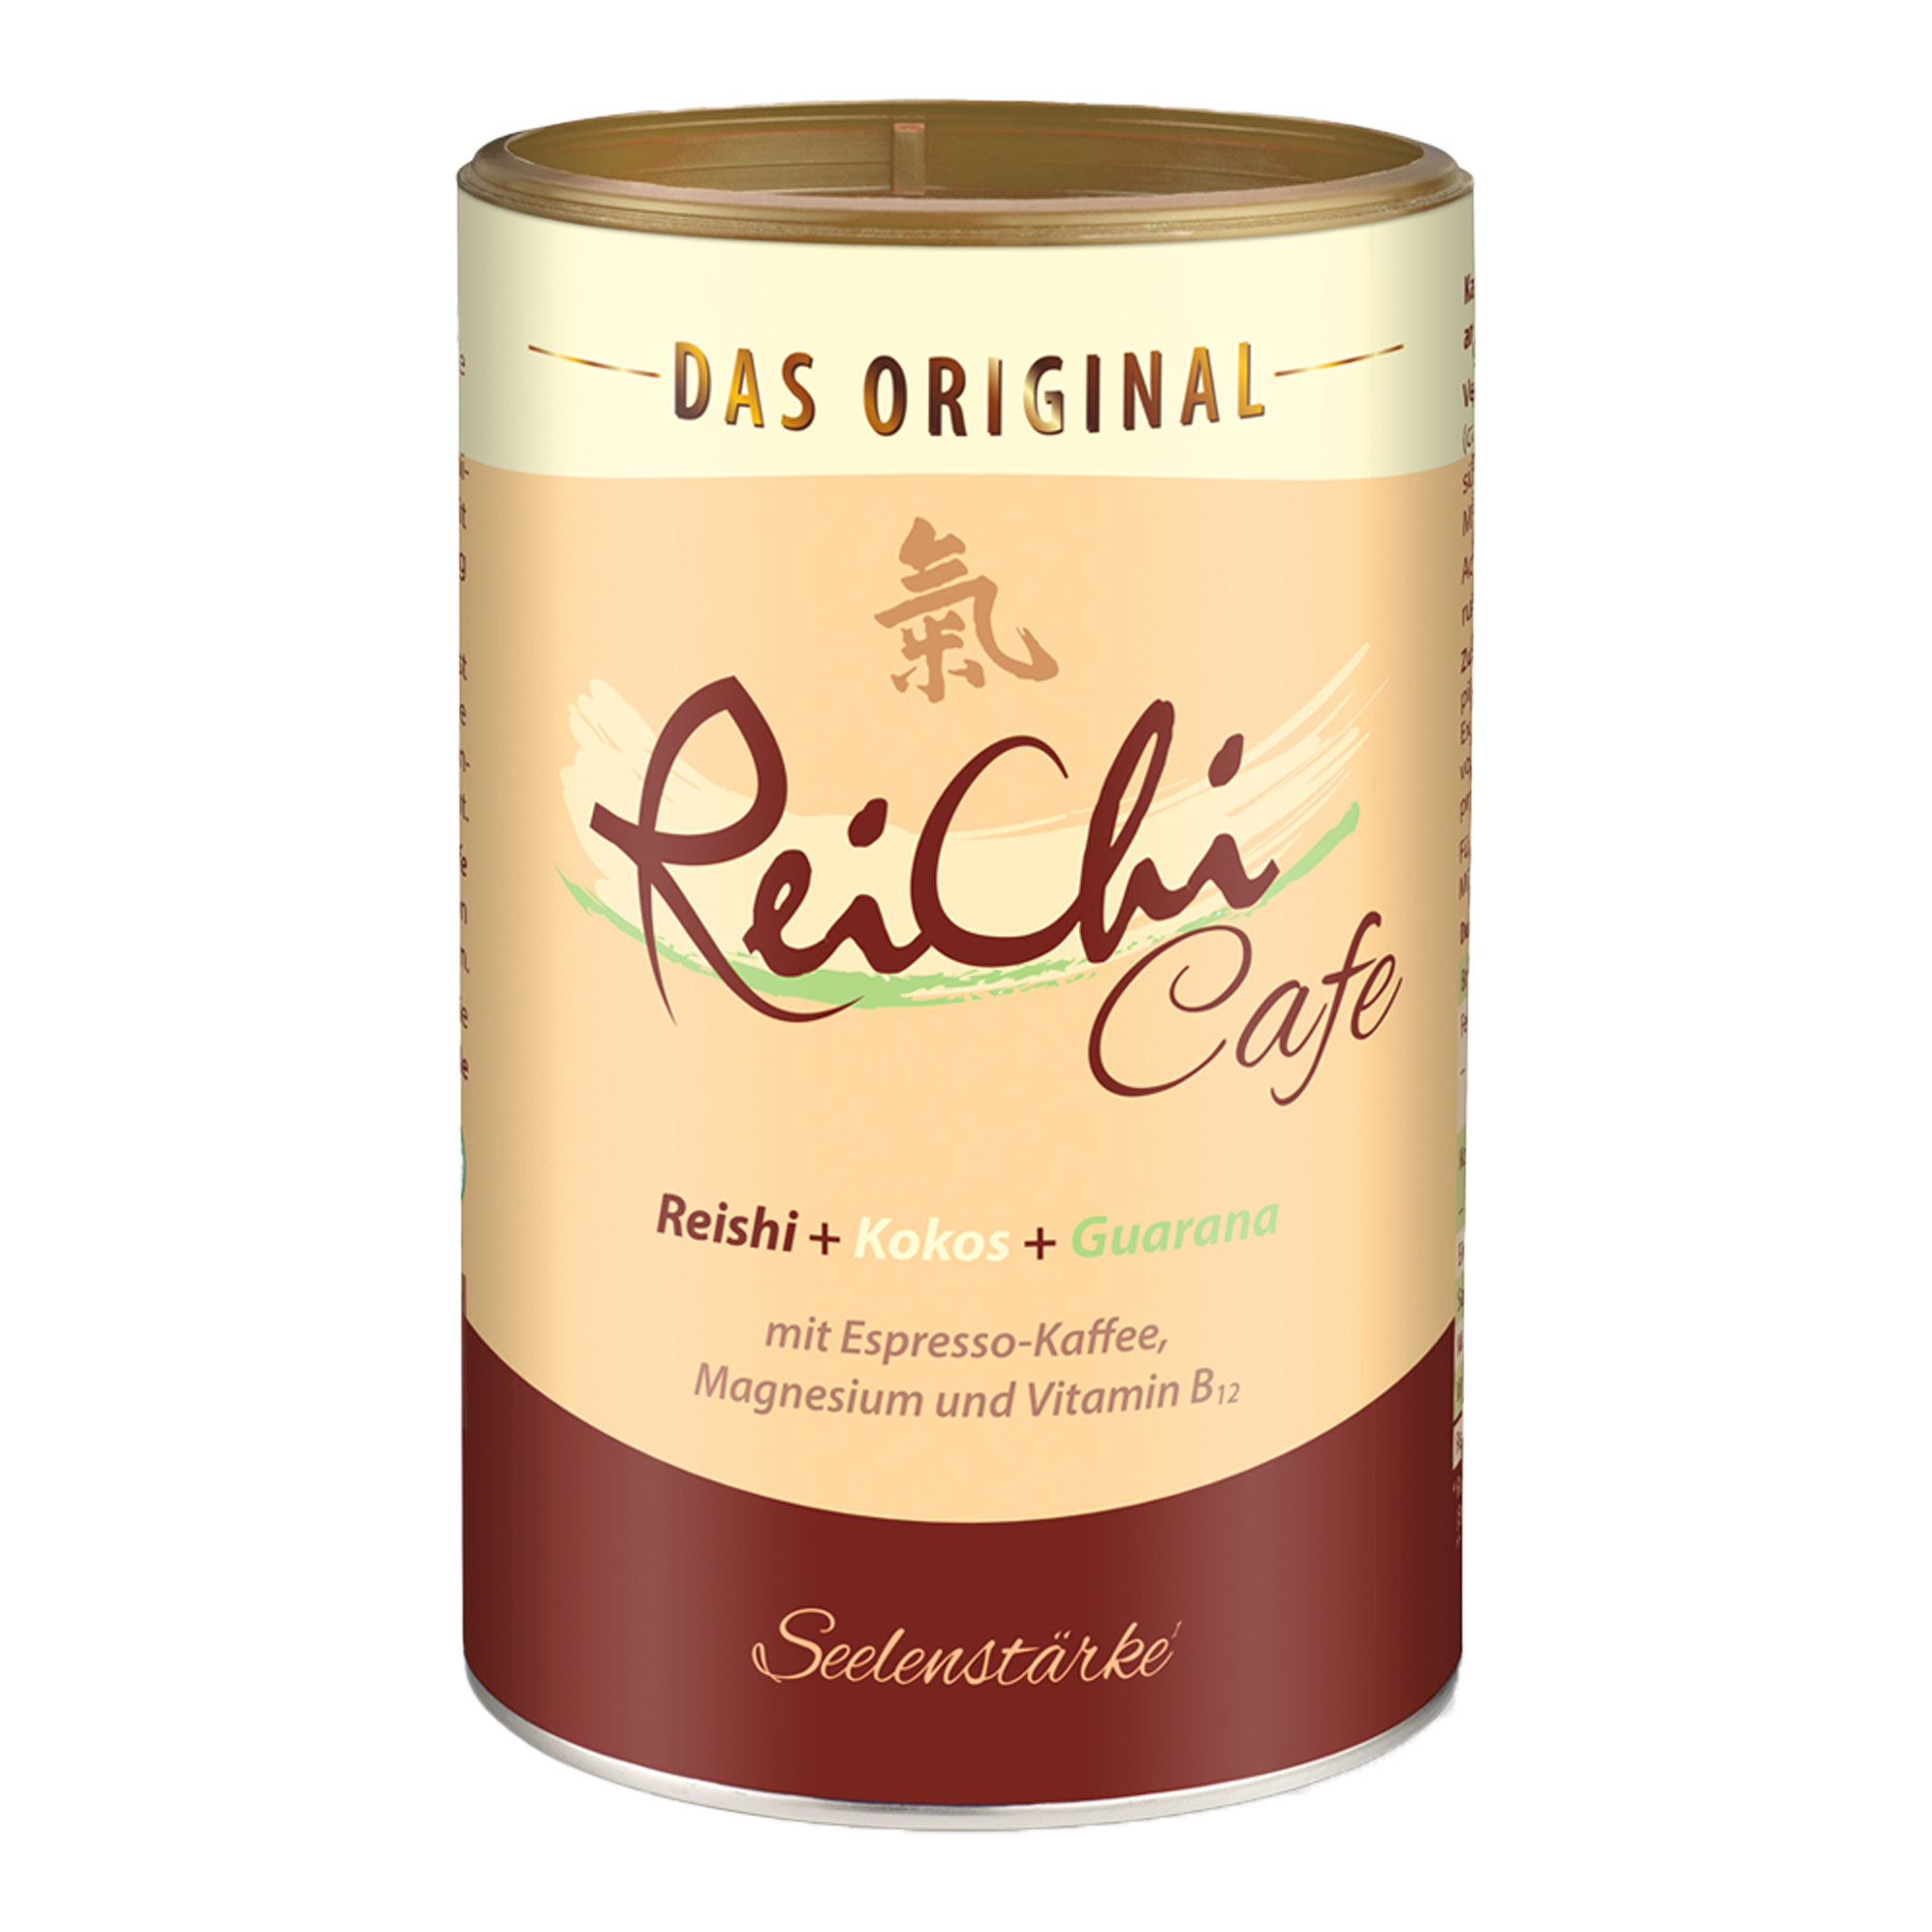 Exotisch-cremiger Genuss aus Reishi-Pilz, Guarana, Kokos und Espresso-Kaffee - mit Vitamin B12 und Magnesium.